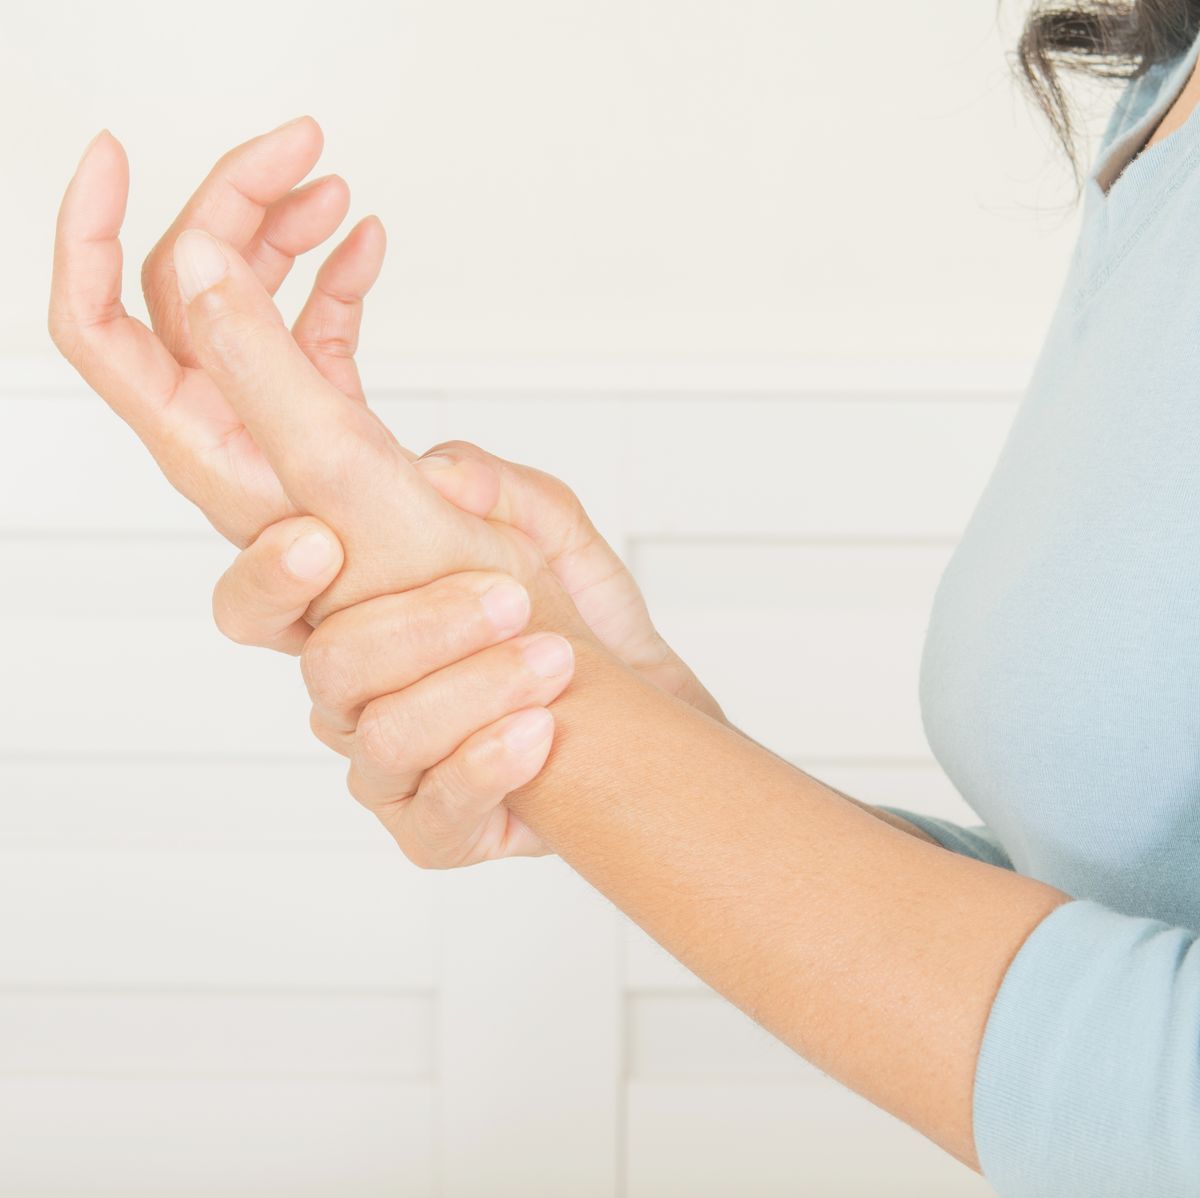 wrist pain in older women